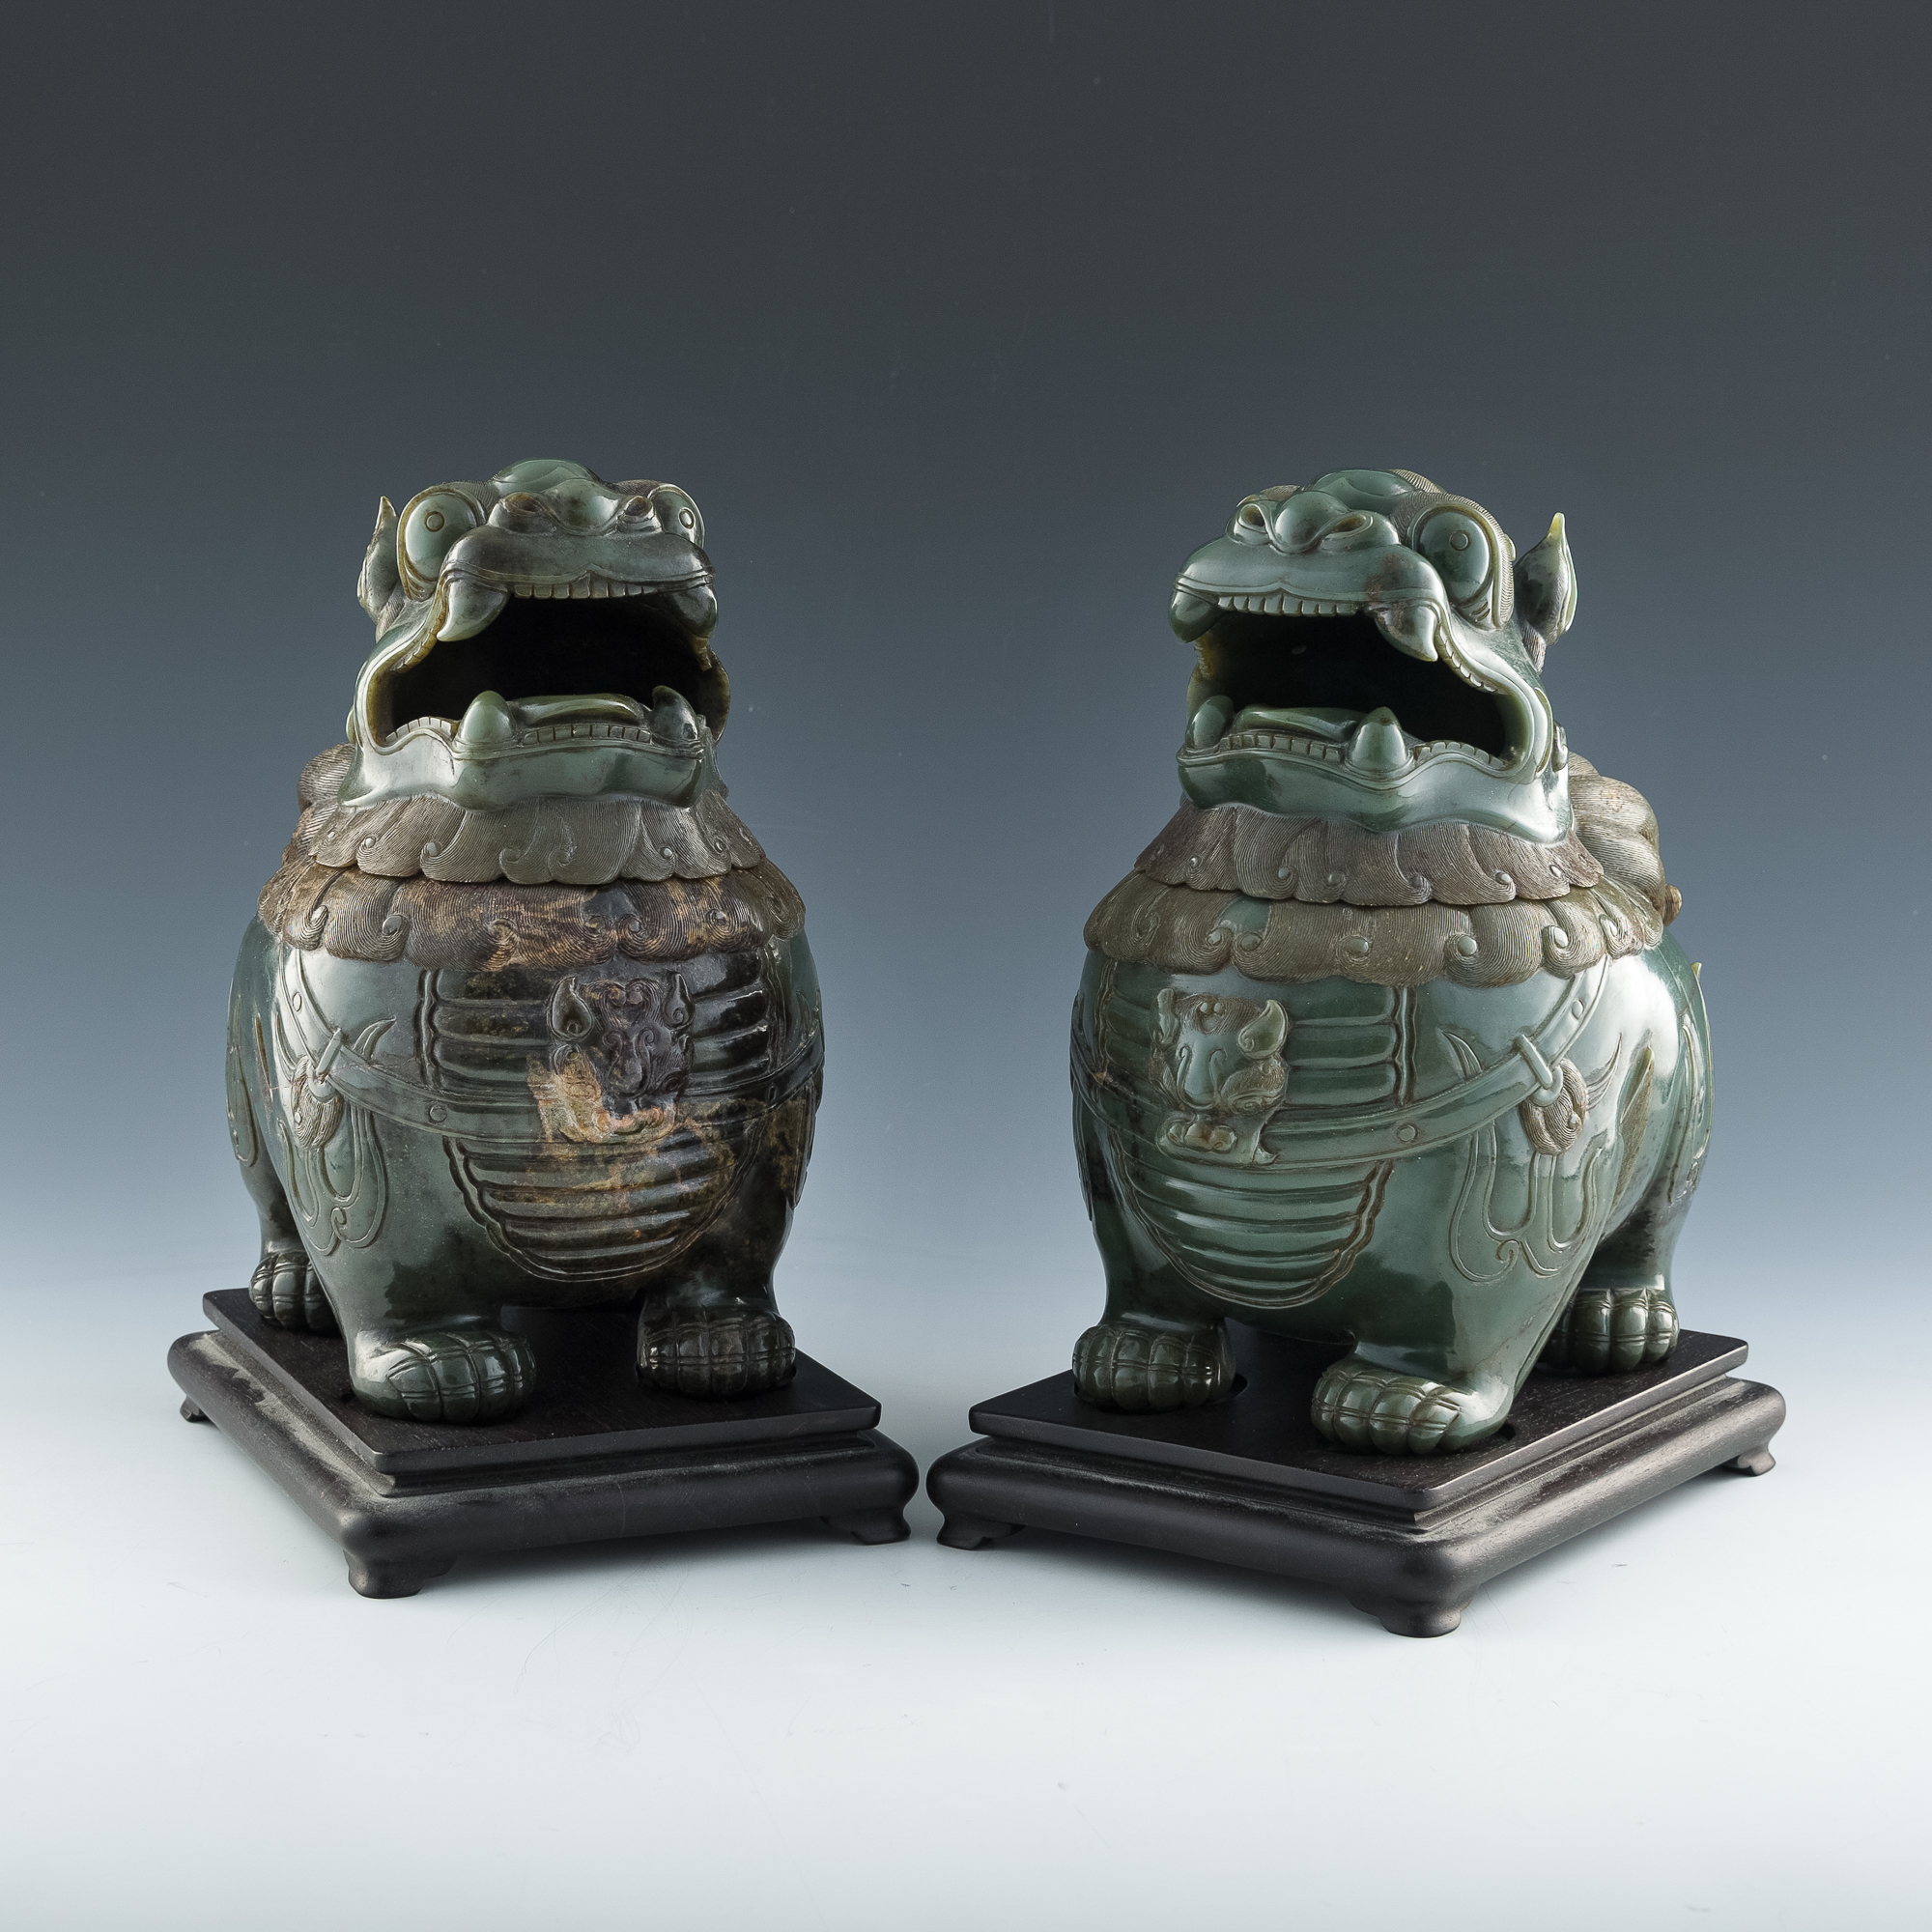 青玉甪端香薰一對A pair of Chinese carved celadon jade luduan-form 